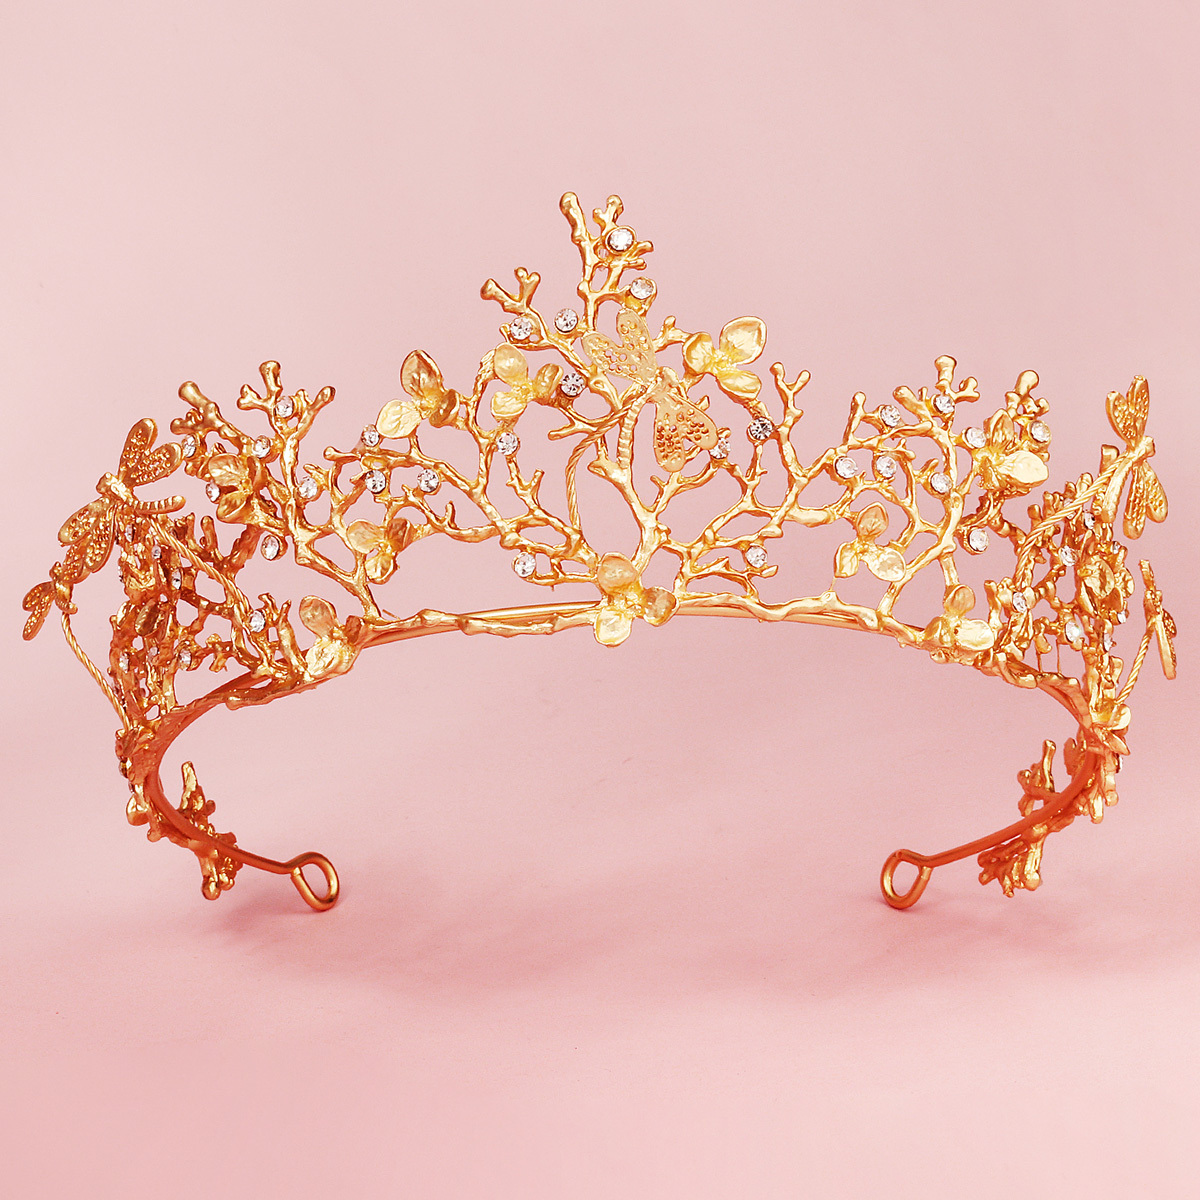 PEORCHID Luxury Golden Crown Scepter Bouquet Wedding Gothic Queen